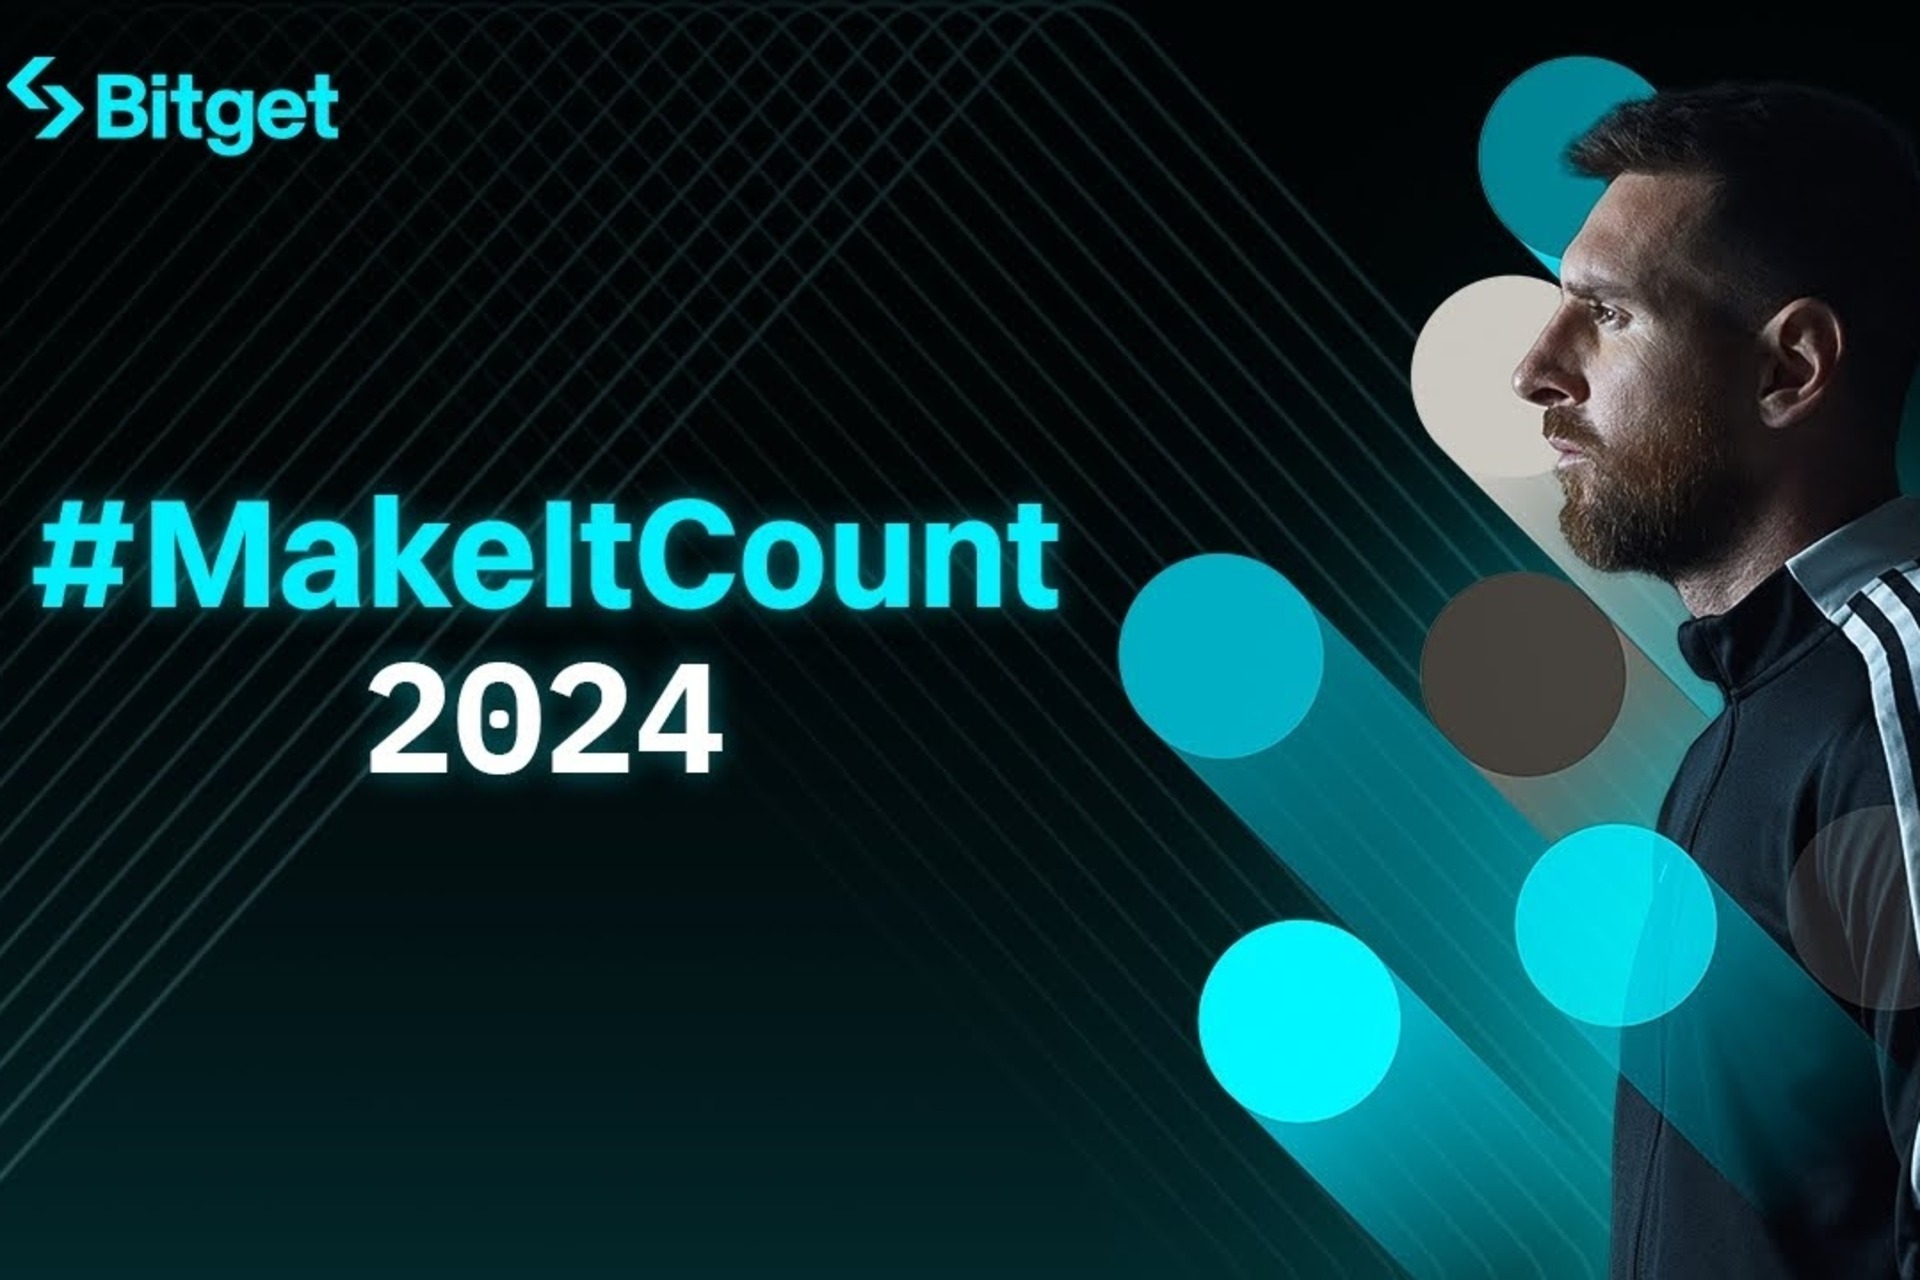 Lionel Messi: filmen #MakeItCount 2024 symboliserer de grunnleggende verdiene som deles av kryptobørsen Bitget og den argentinske fotballspilleren